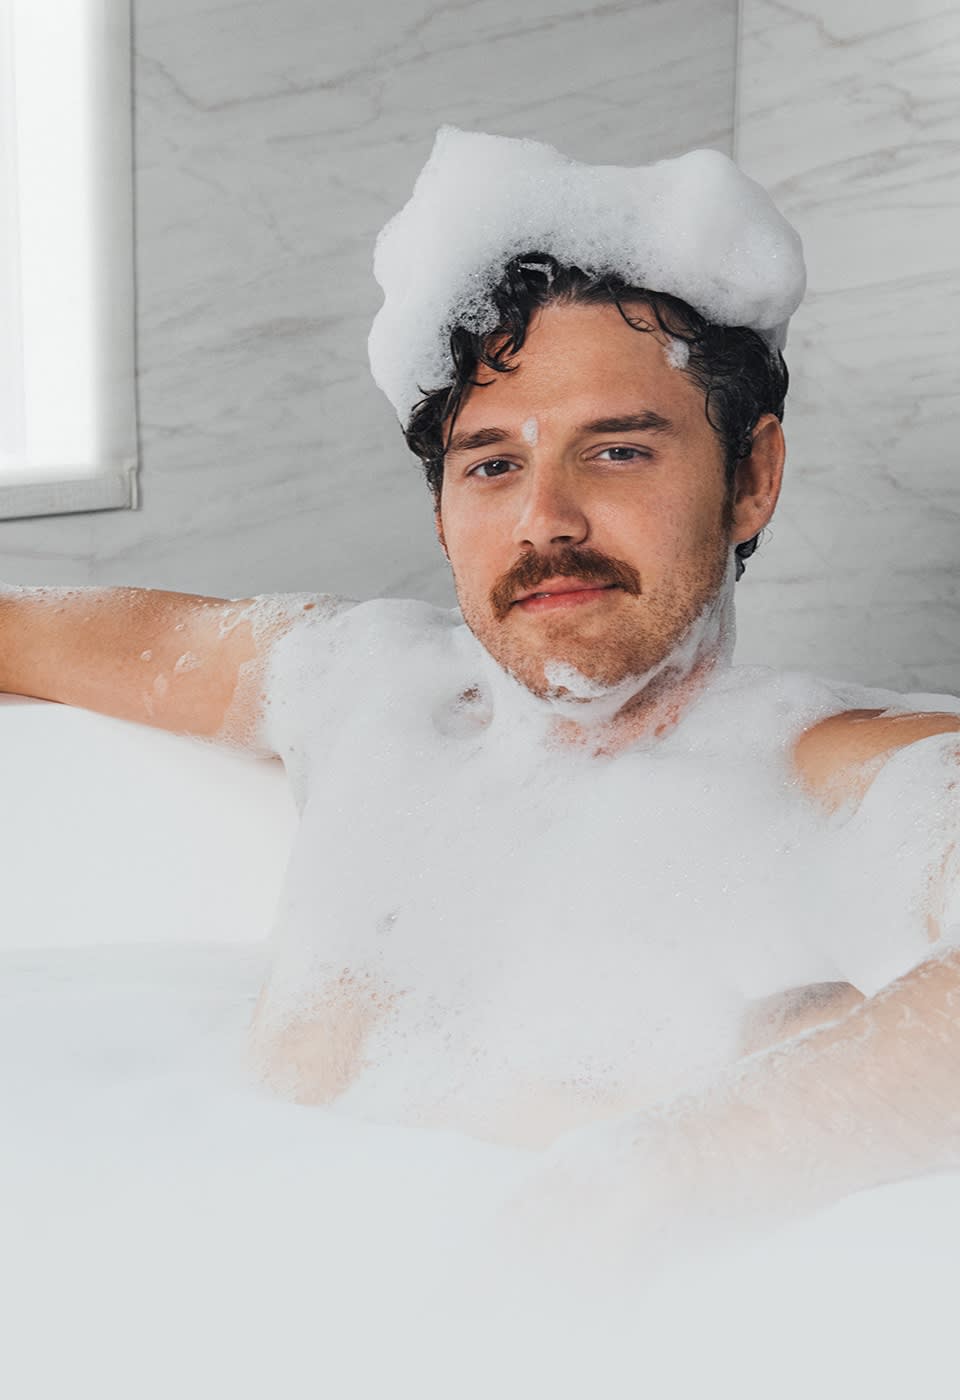 Modèle masculin assis dans une baignoire et couvert de mousse